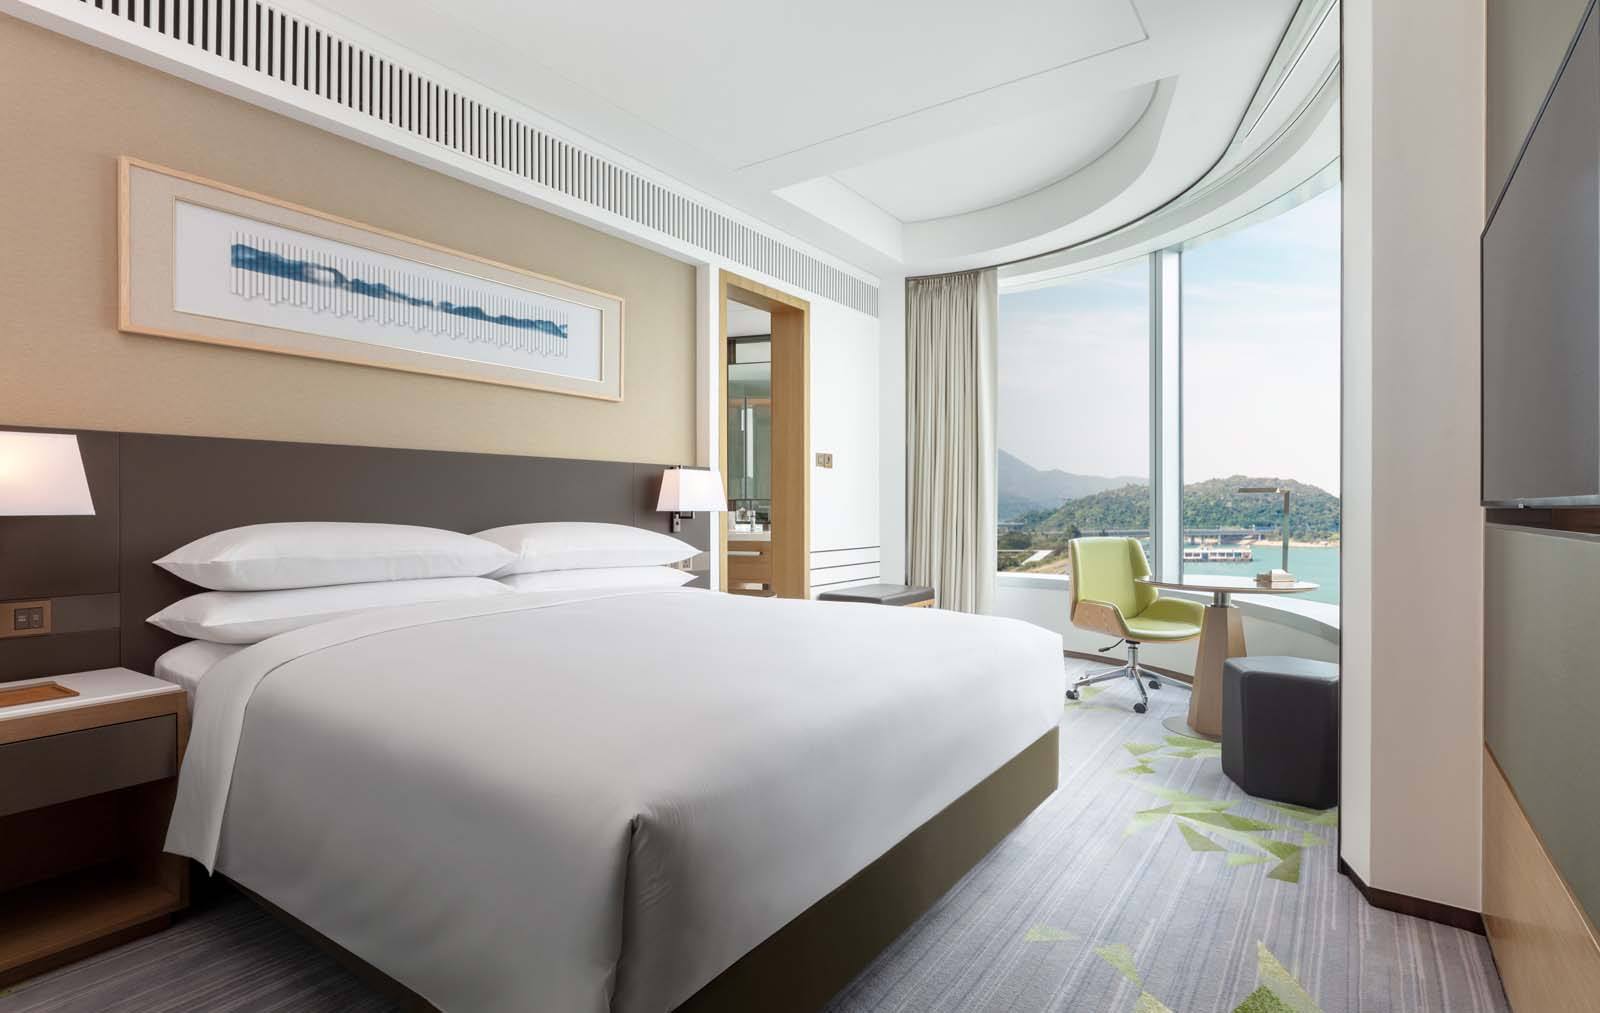 Executive ocean view suite bedroom at the Sheraton Tung Chung near Hong Kong Airport